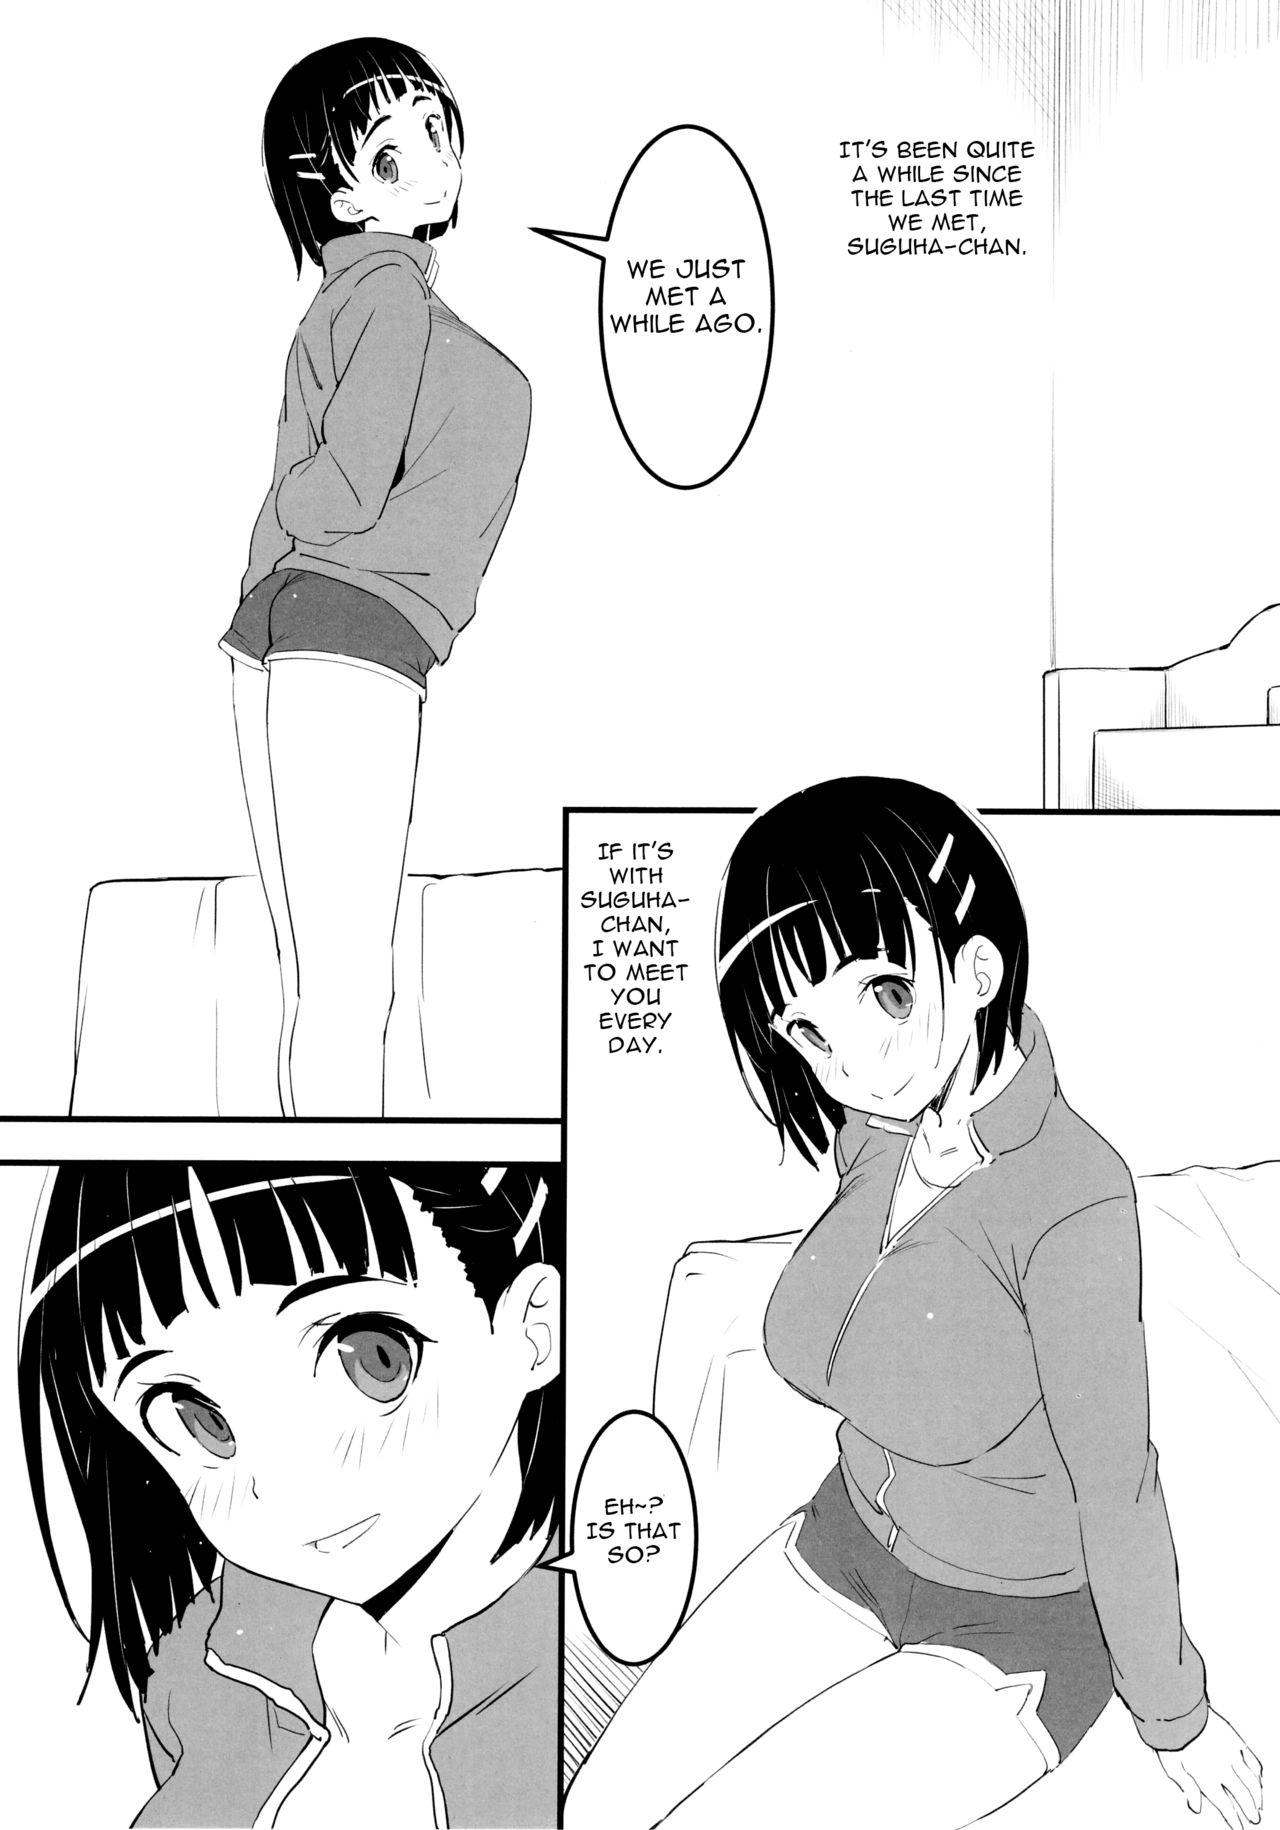 Oji-san's visit to Suguha's bedroom 1